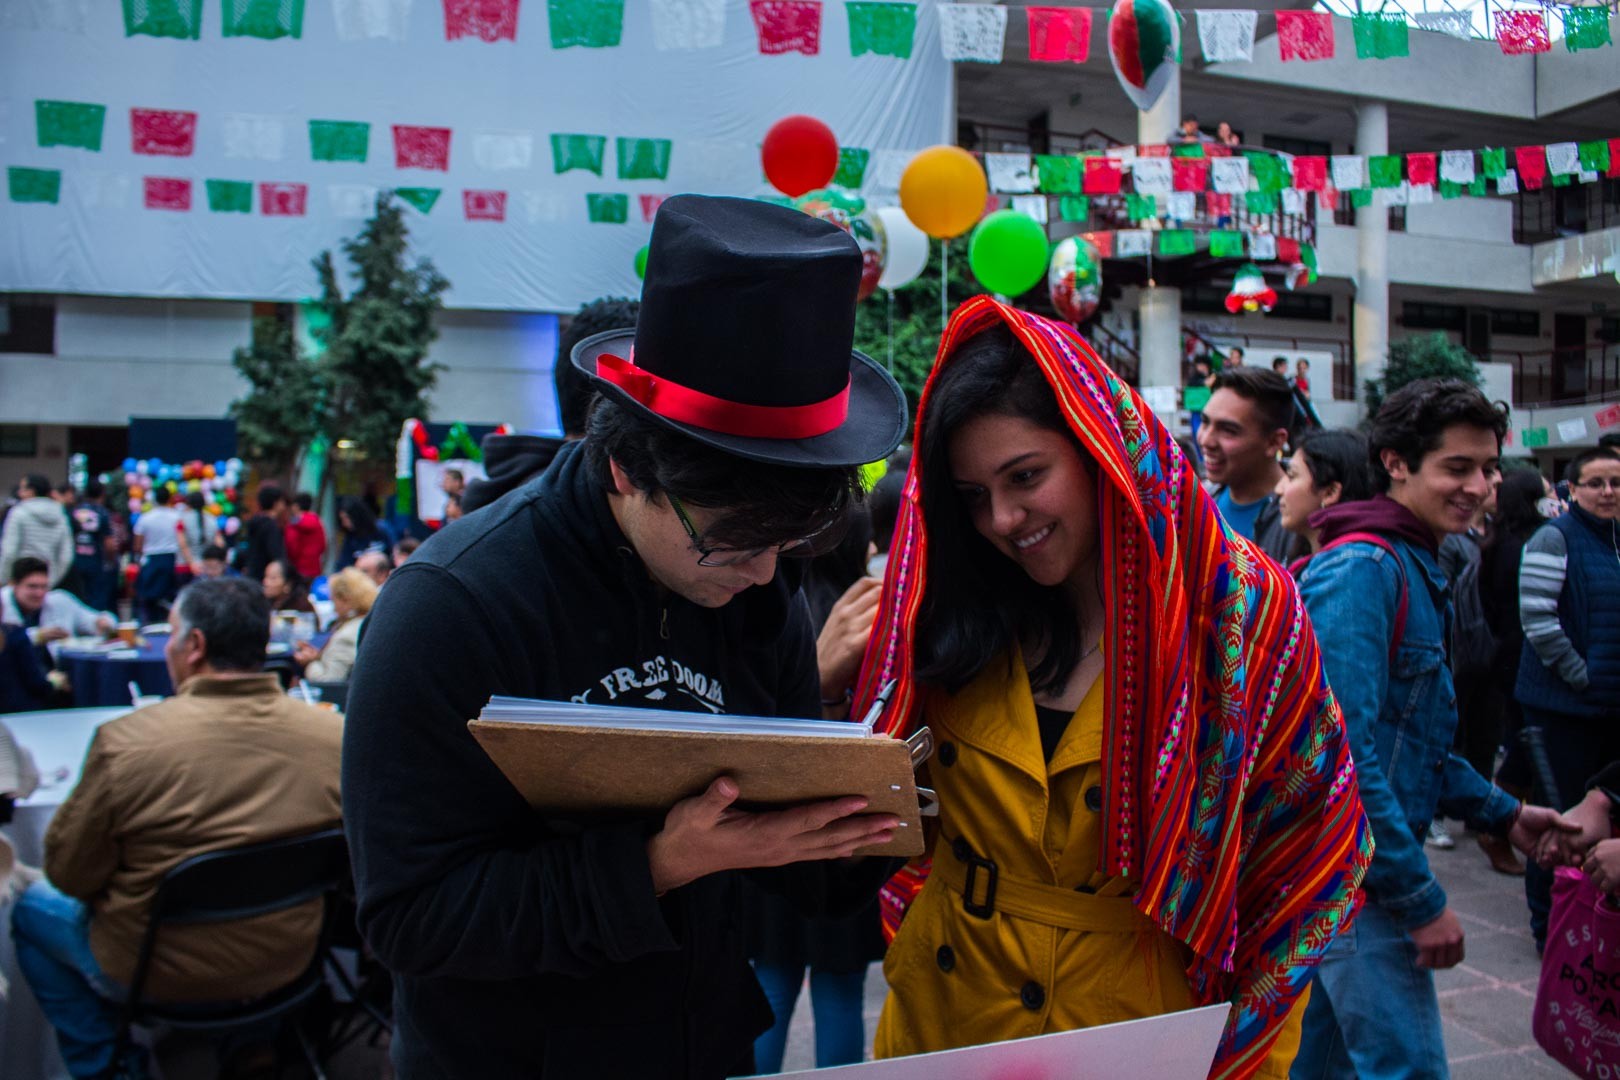 Fotografía del festejo de la noche mexicana en el TEC Toluca